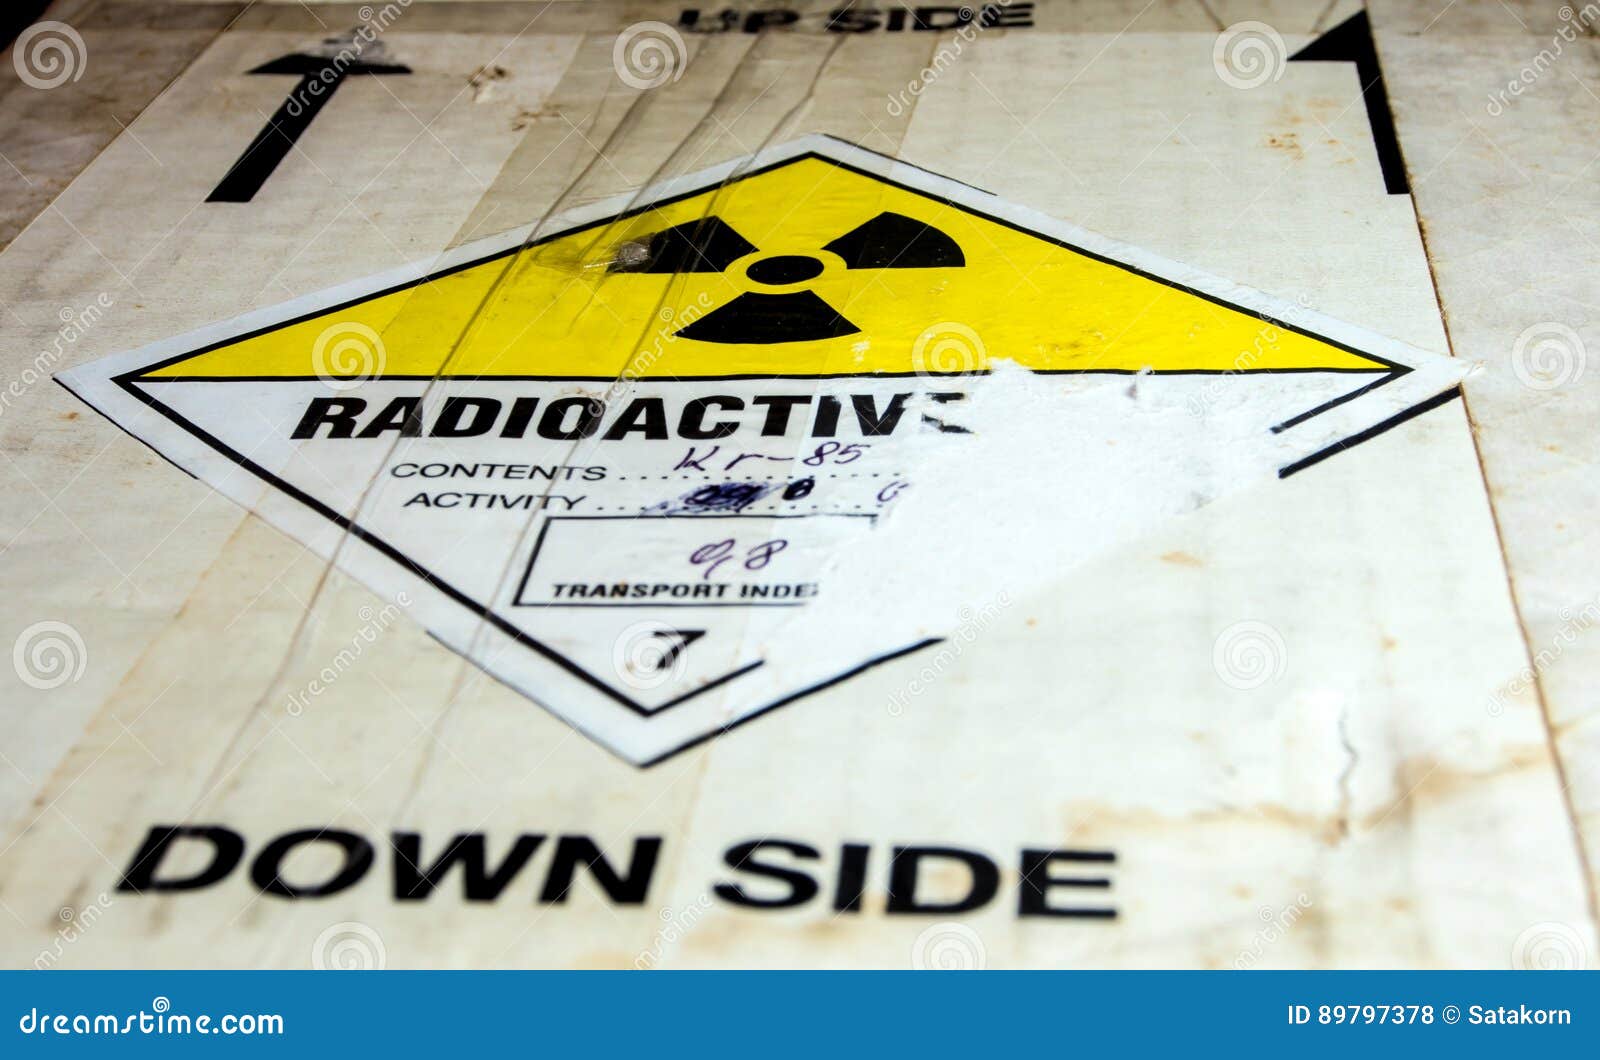 Transportindex Des Radioaktiven Materials am Transportpapier Stockfoto -  Bild von aufmerksamkeit, verschiffen: 89797378